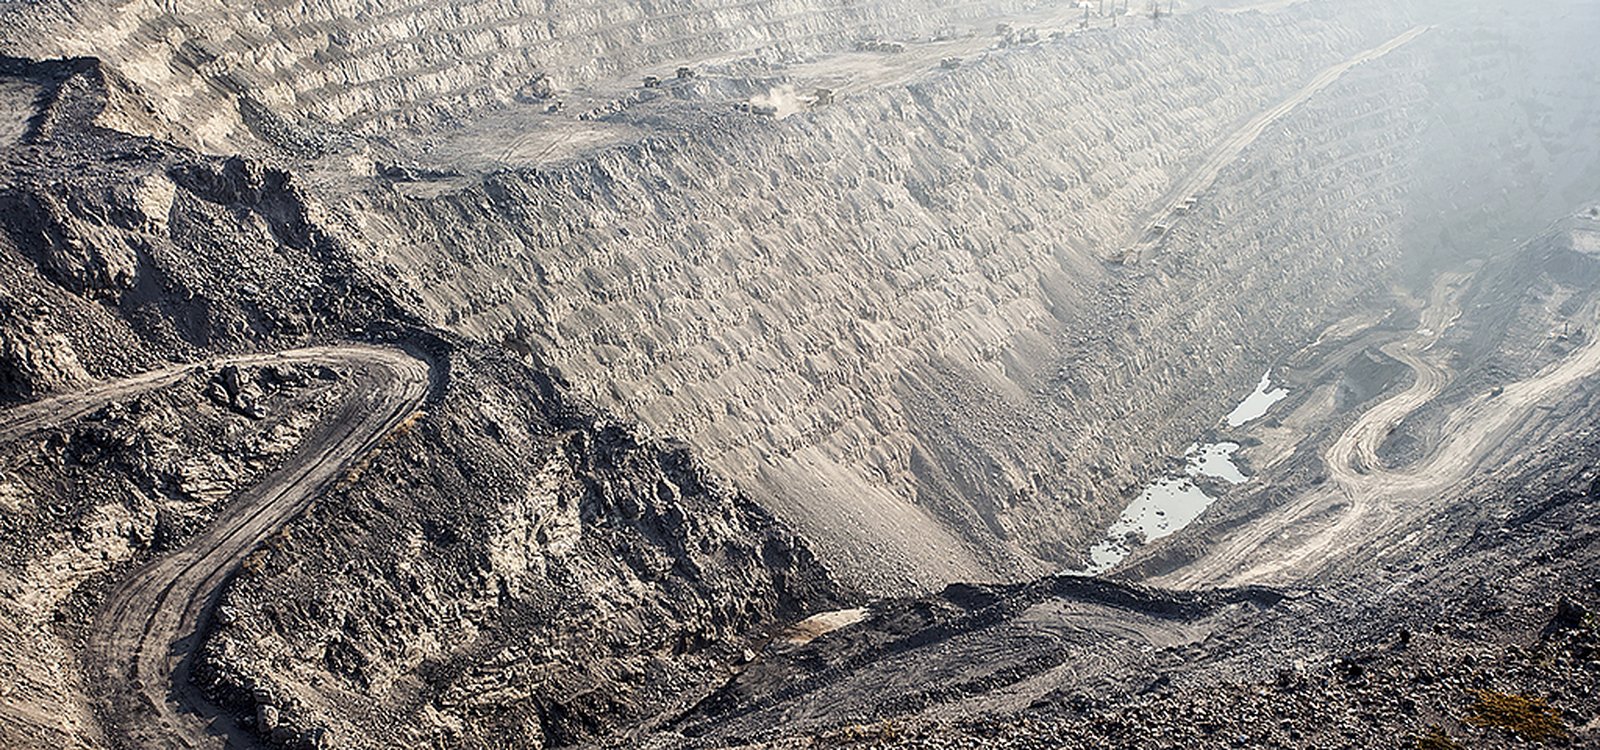 Ранее добыча цинка на руднике Рампура-Агуча велась только открытым способом. Теперь параллельно ведется и подземная добыча.